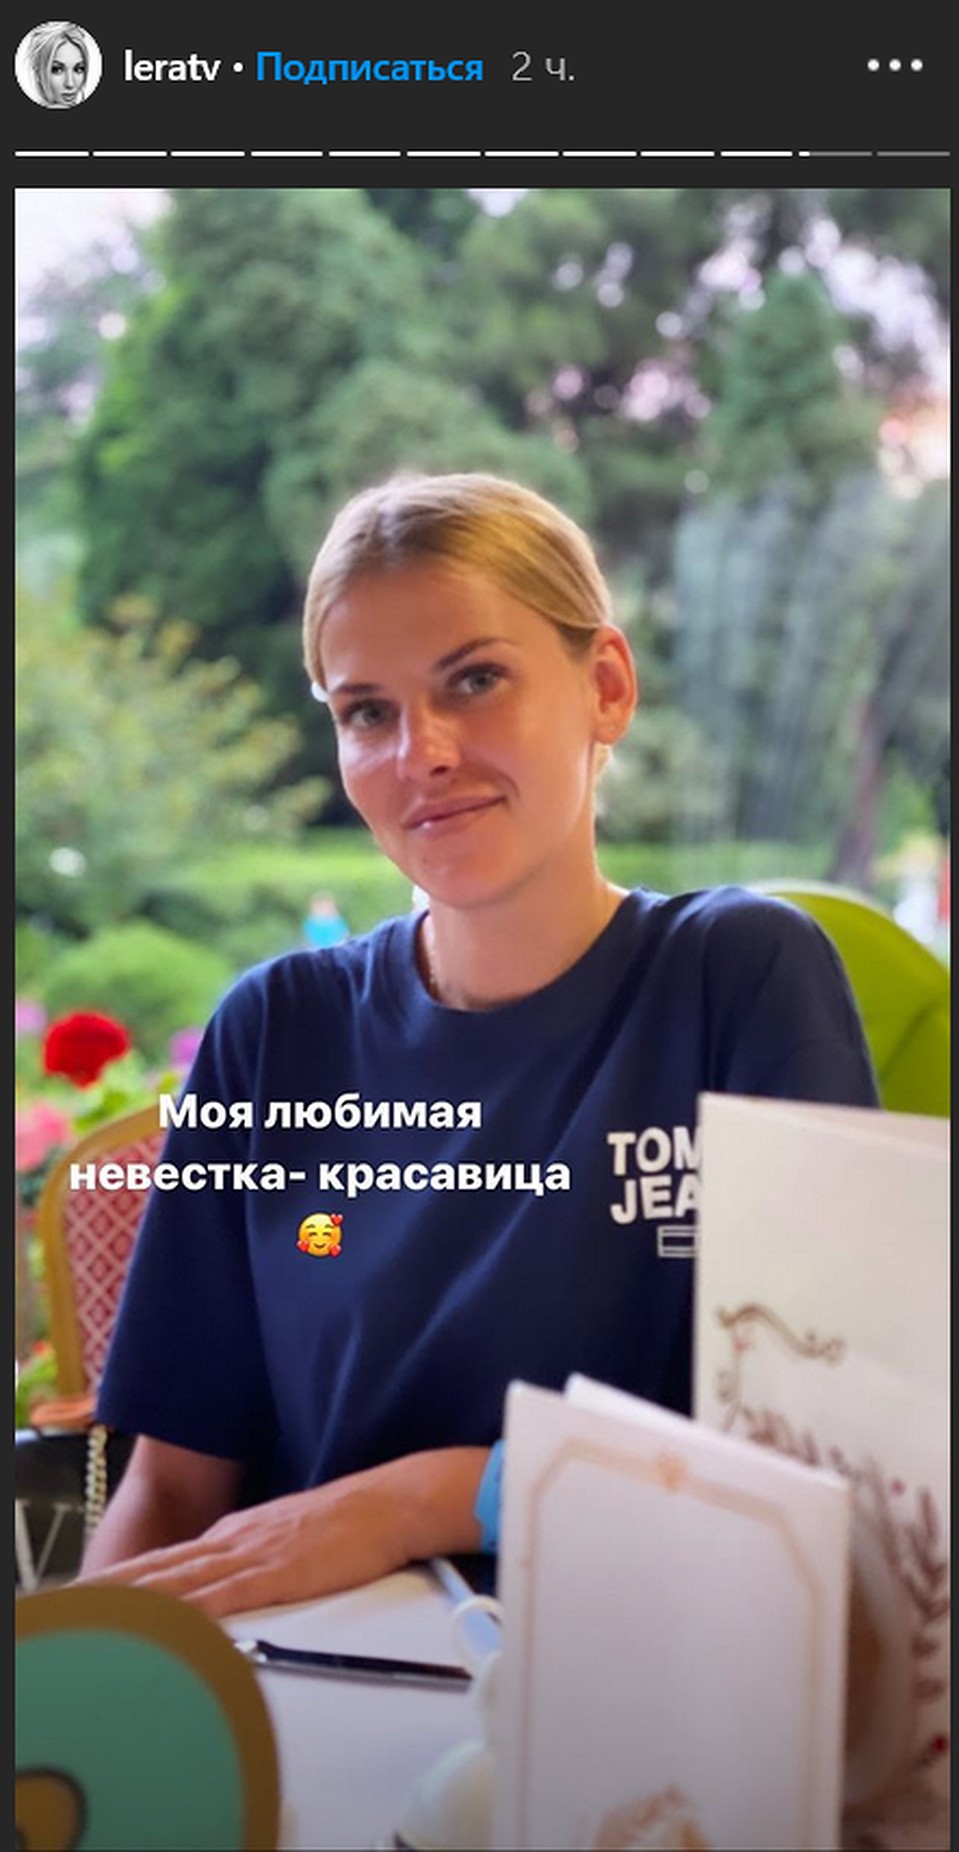 Лера Кудрявцева впервые показала красавицу-жену своего сына